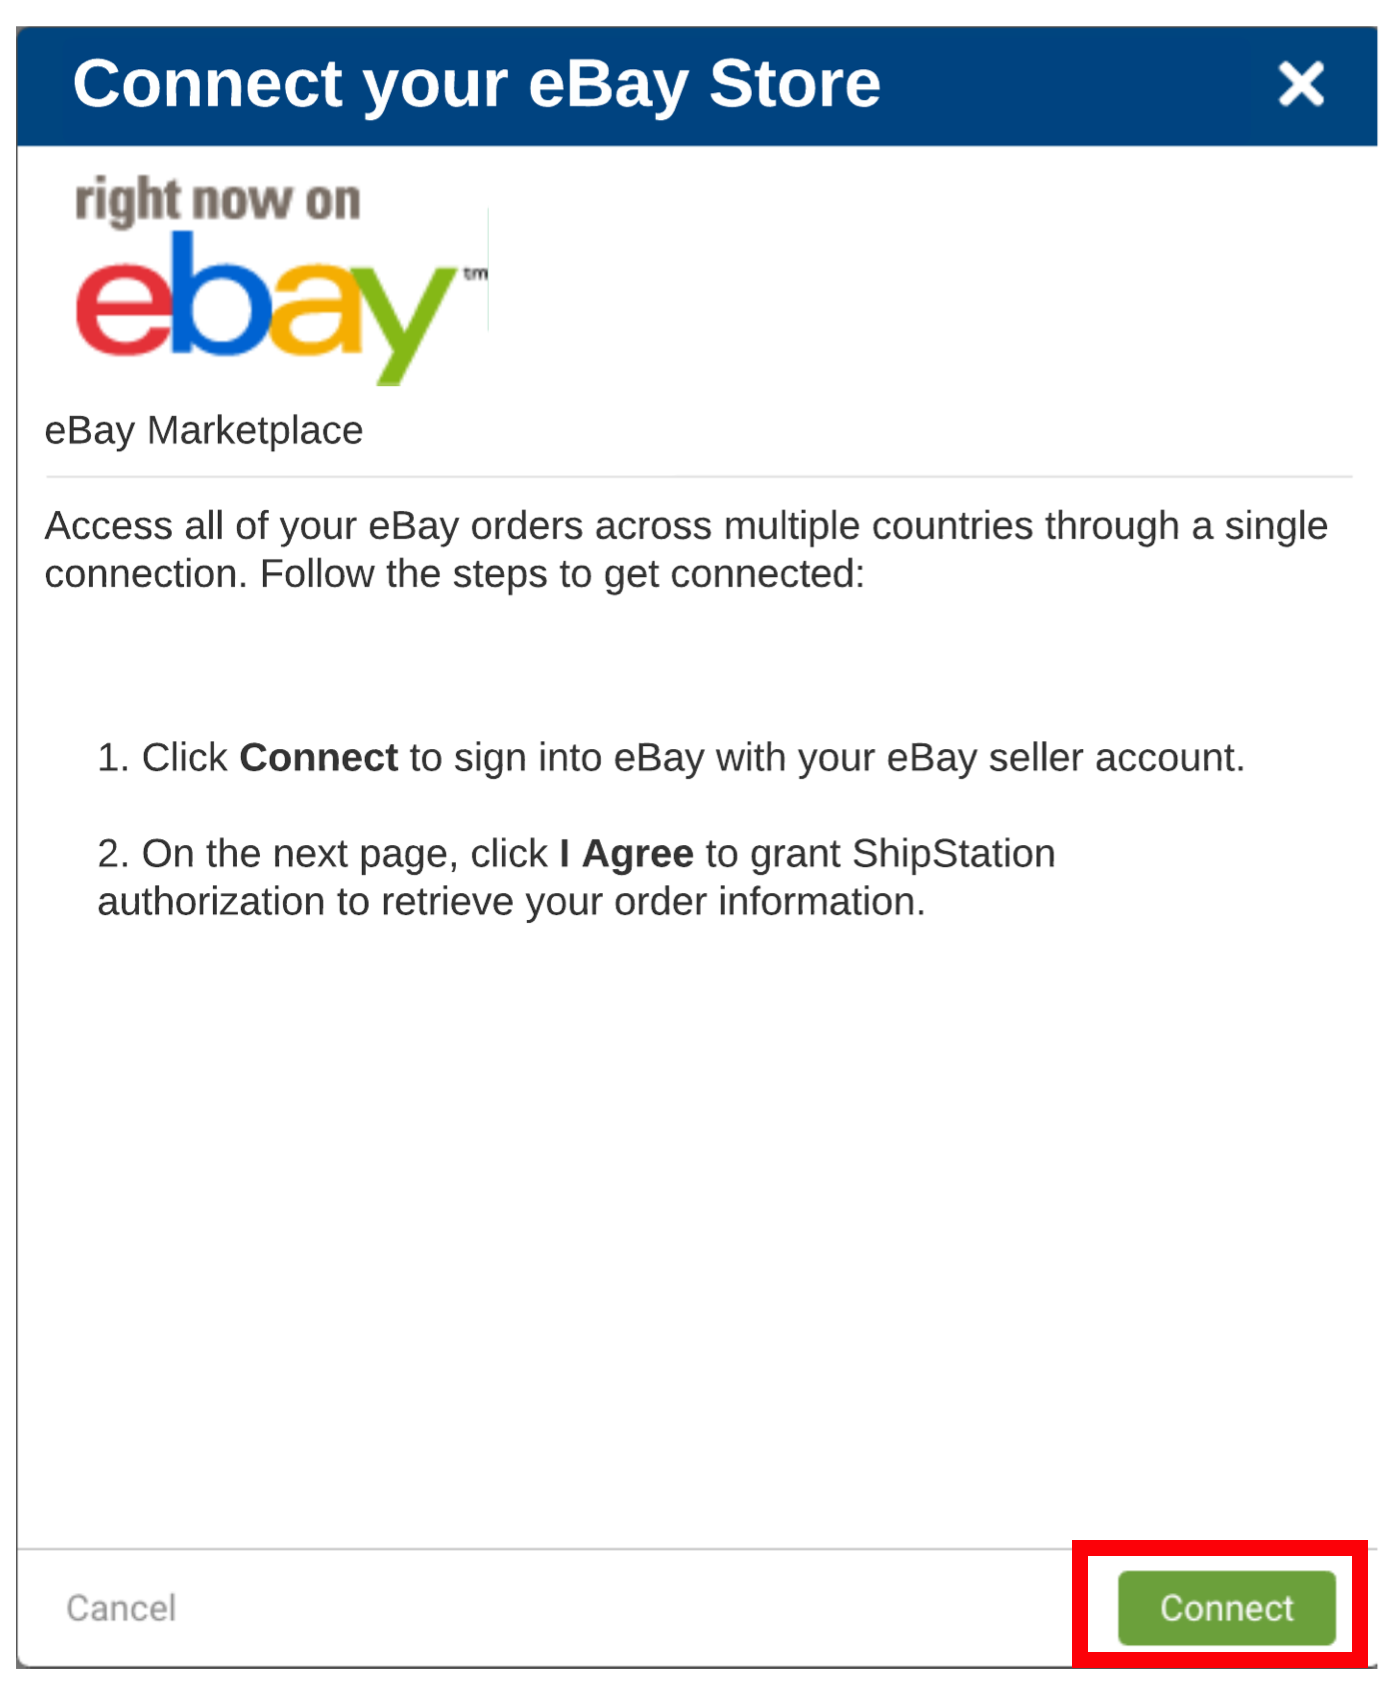 Imagen: ventana emergente para conectar tu tienda eBay. El recuadro destaca el botón Conectar